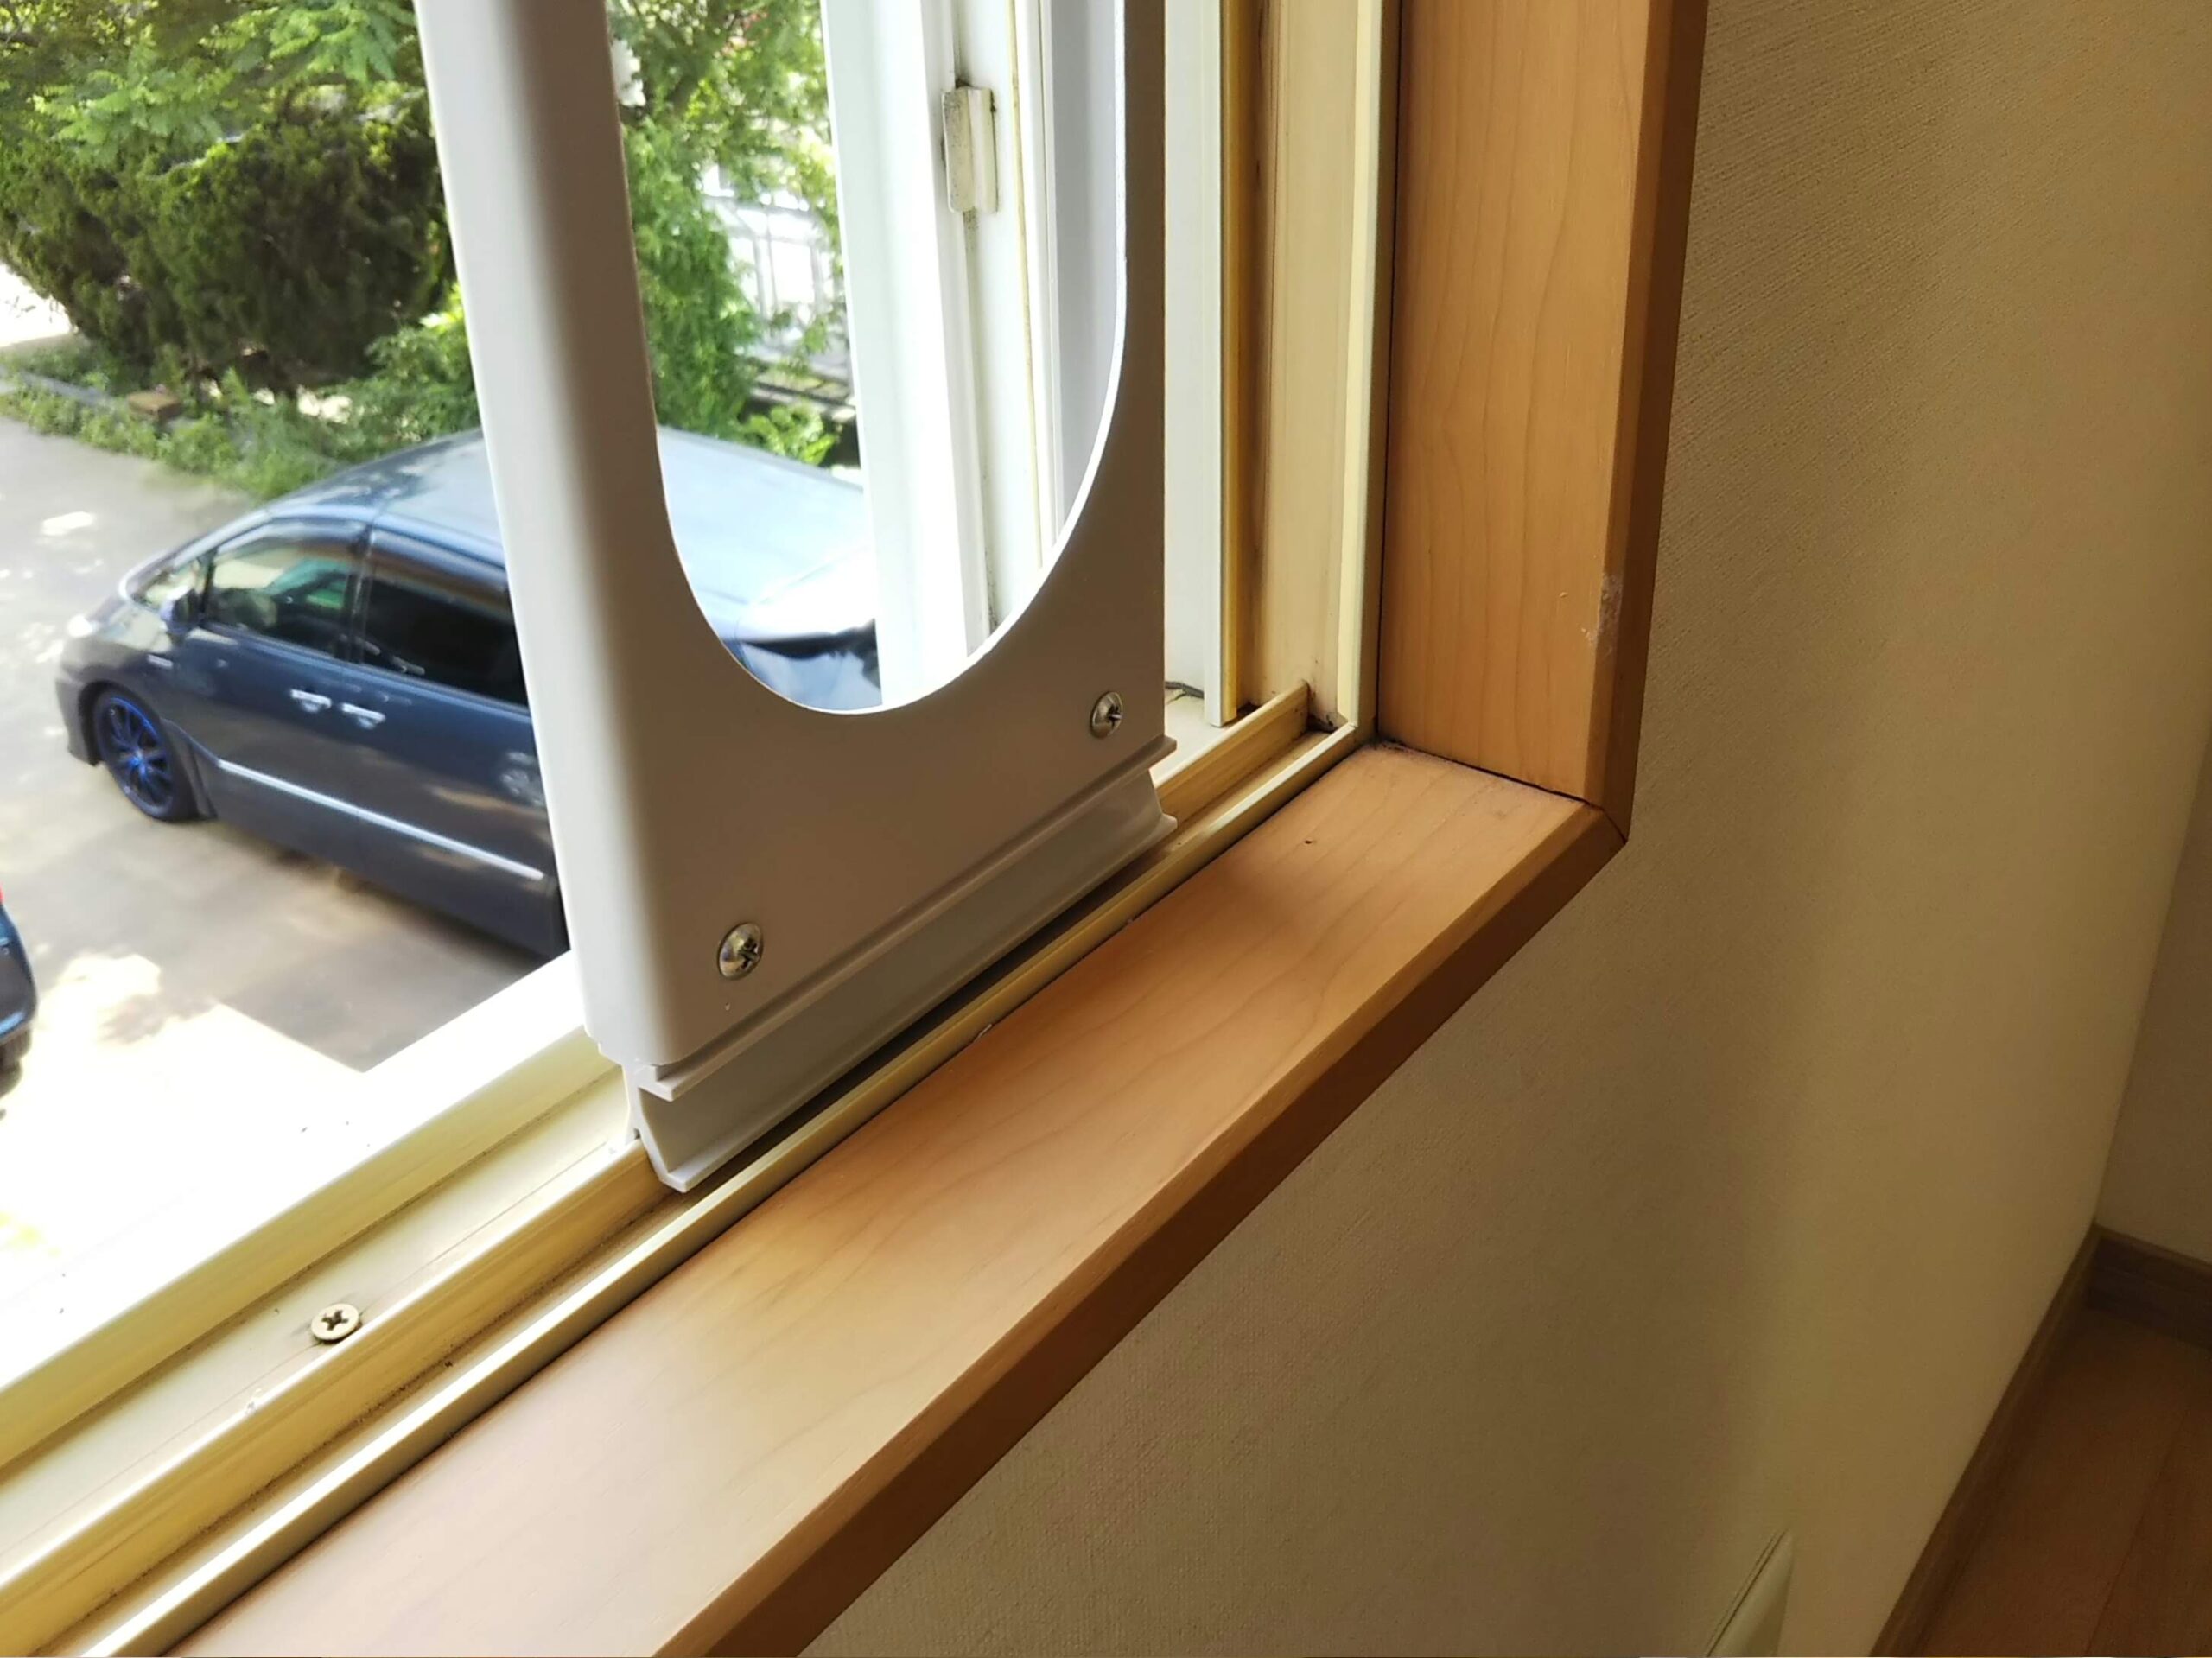 窓パネル・排熱ダクト設置手順 | 糸偏暖房器具で国内シェアNo.1 | 株式会社 広電 [ KODEN ]